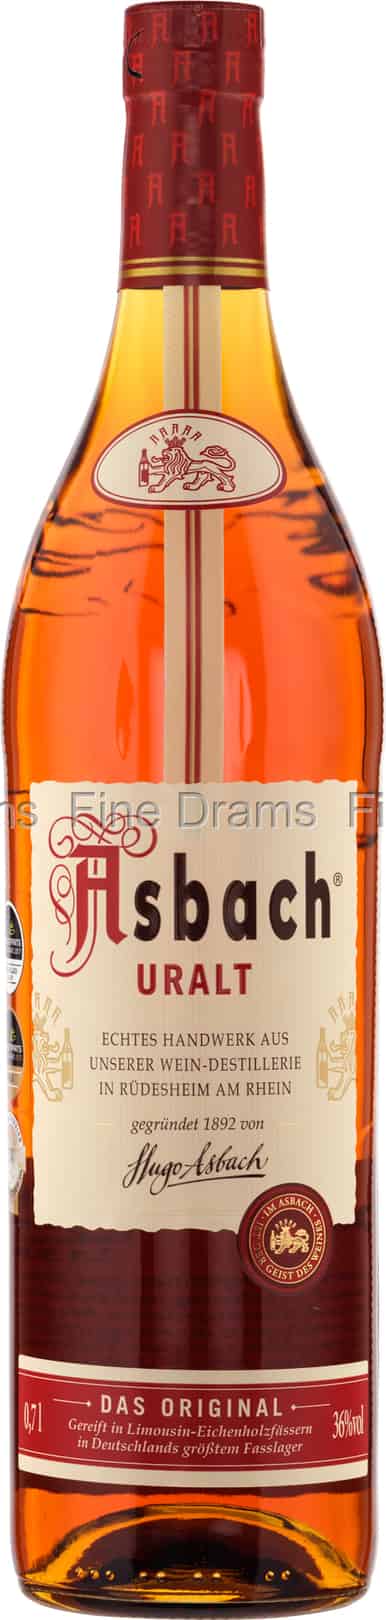 Asbach Uralt (36%) Brandy